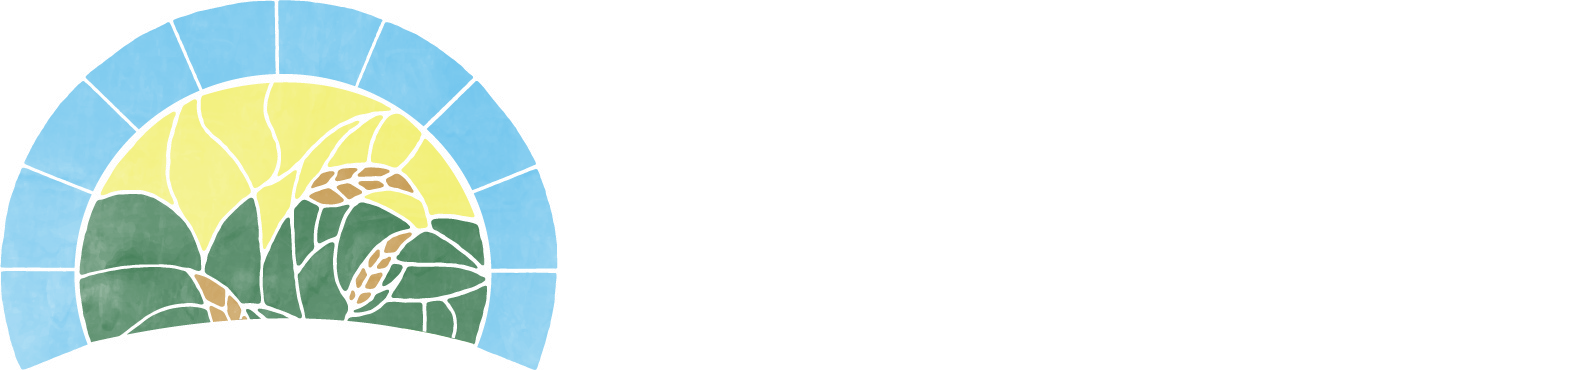 Sumner Mental Health Center